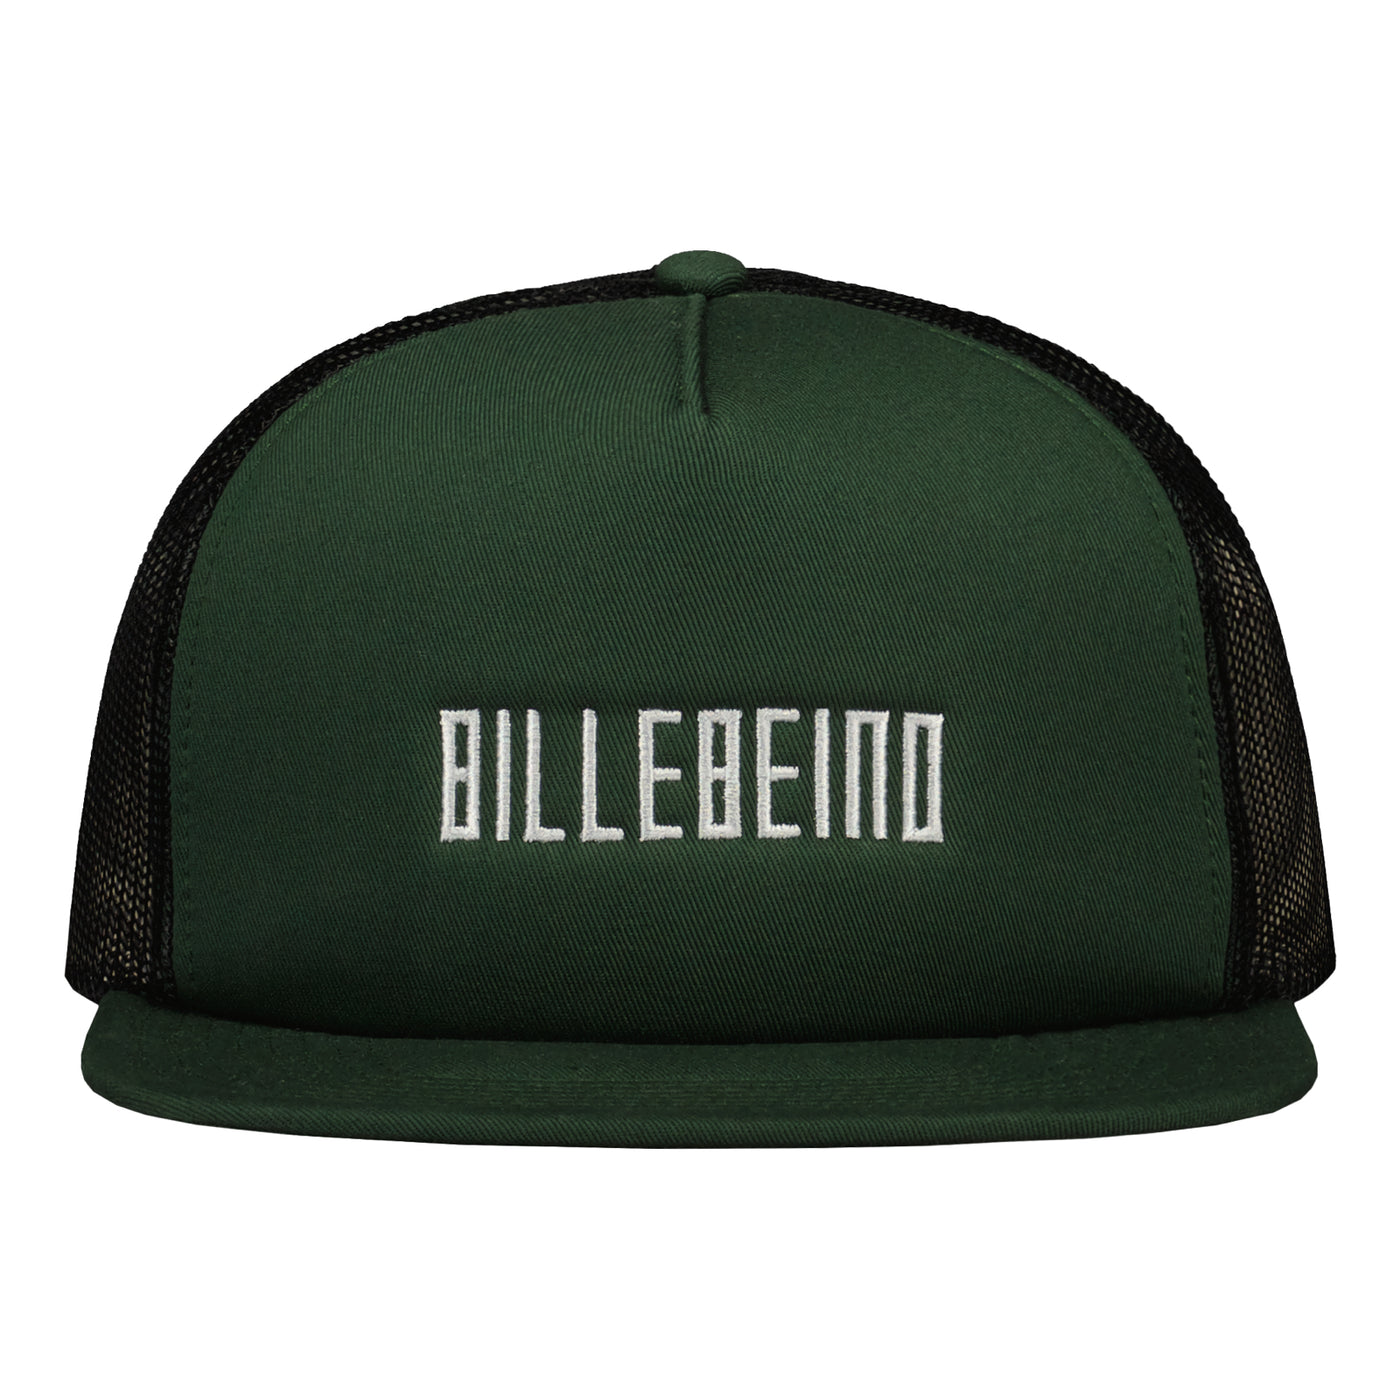 BILLEBEINO TRUCKER CAP Shale Green